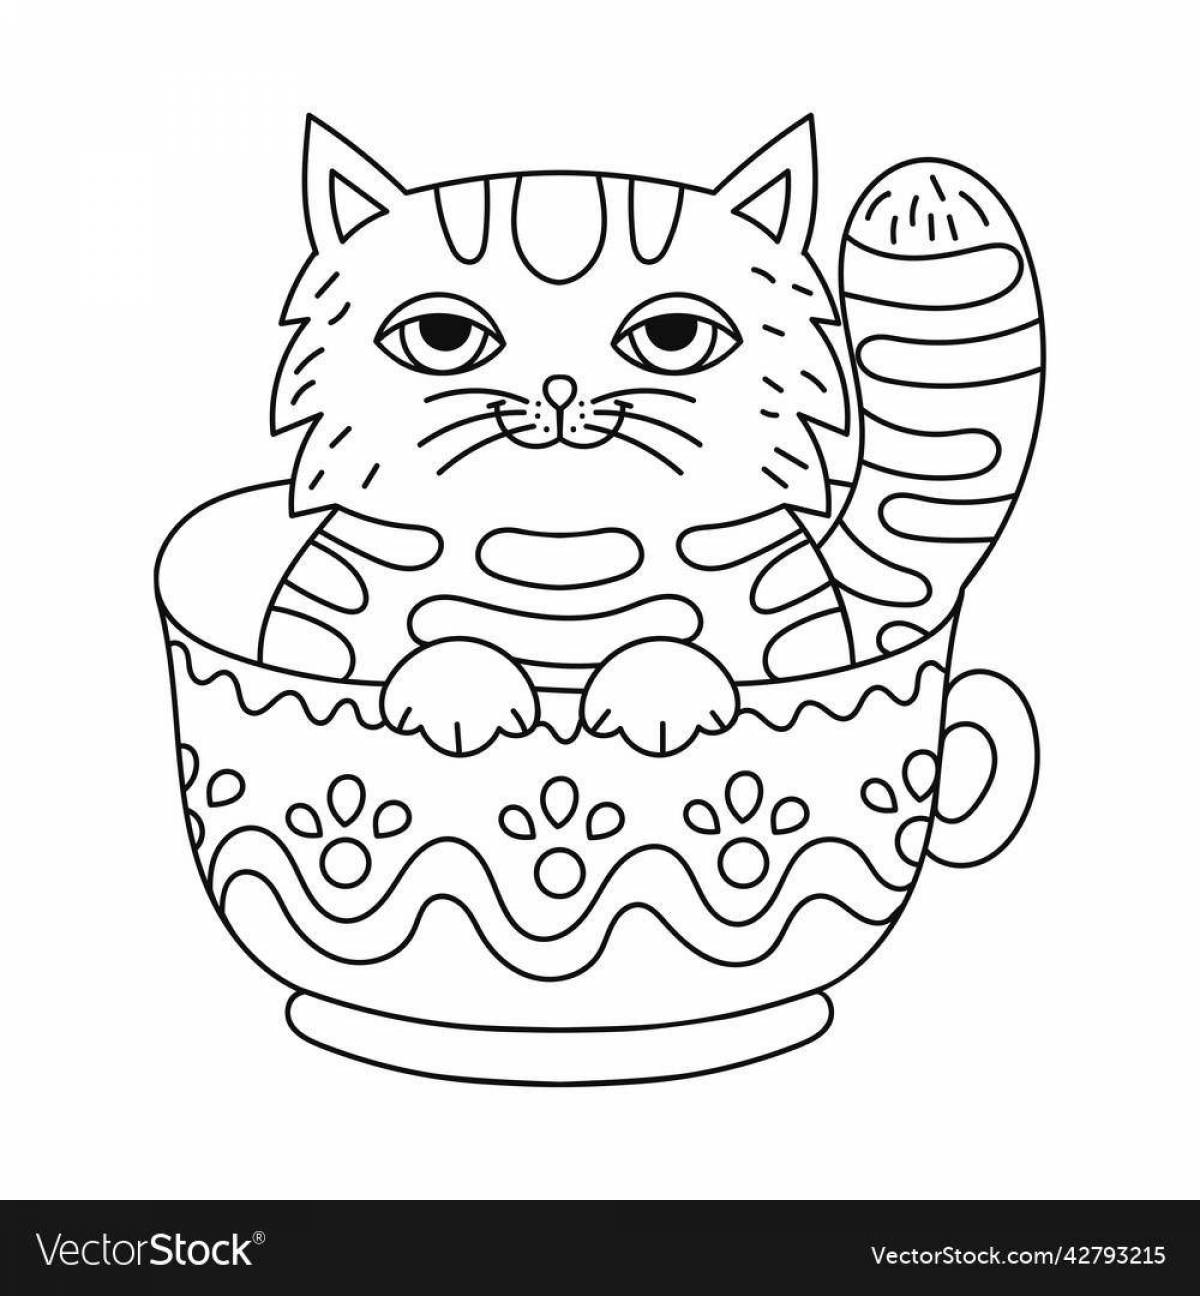 Kitten in a cup #7